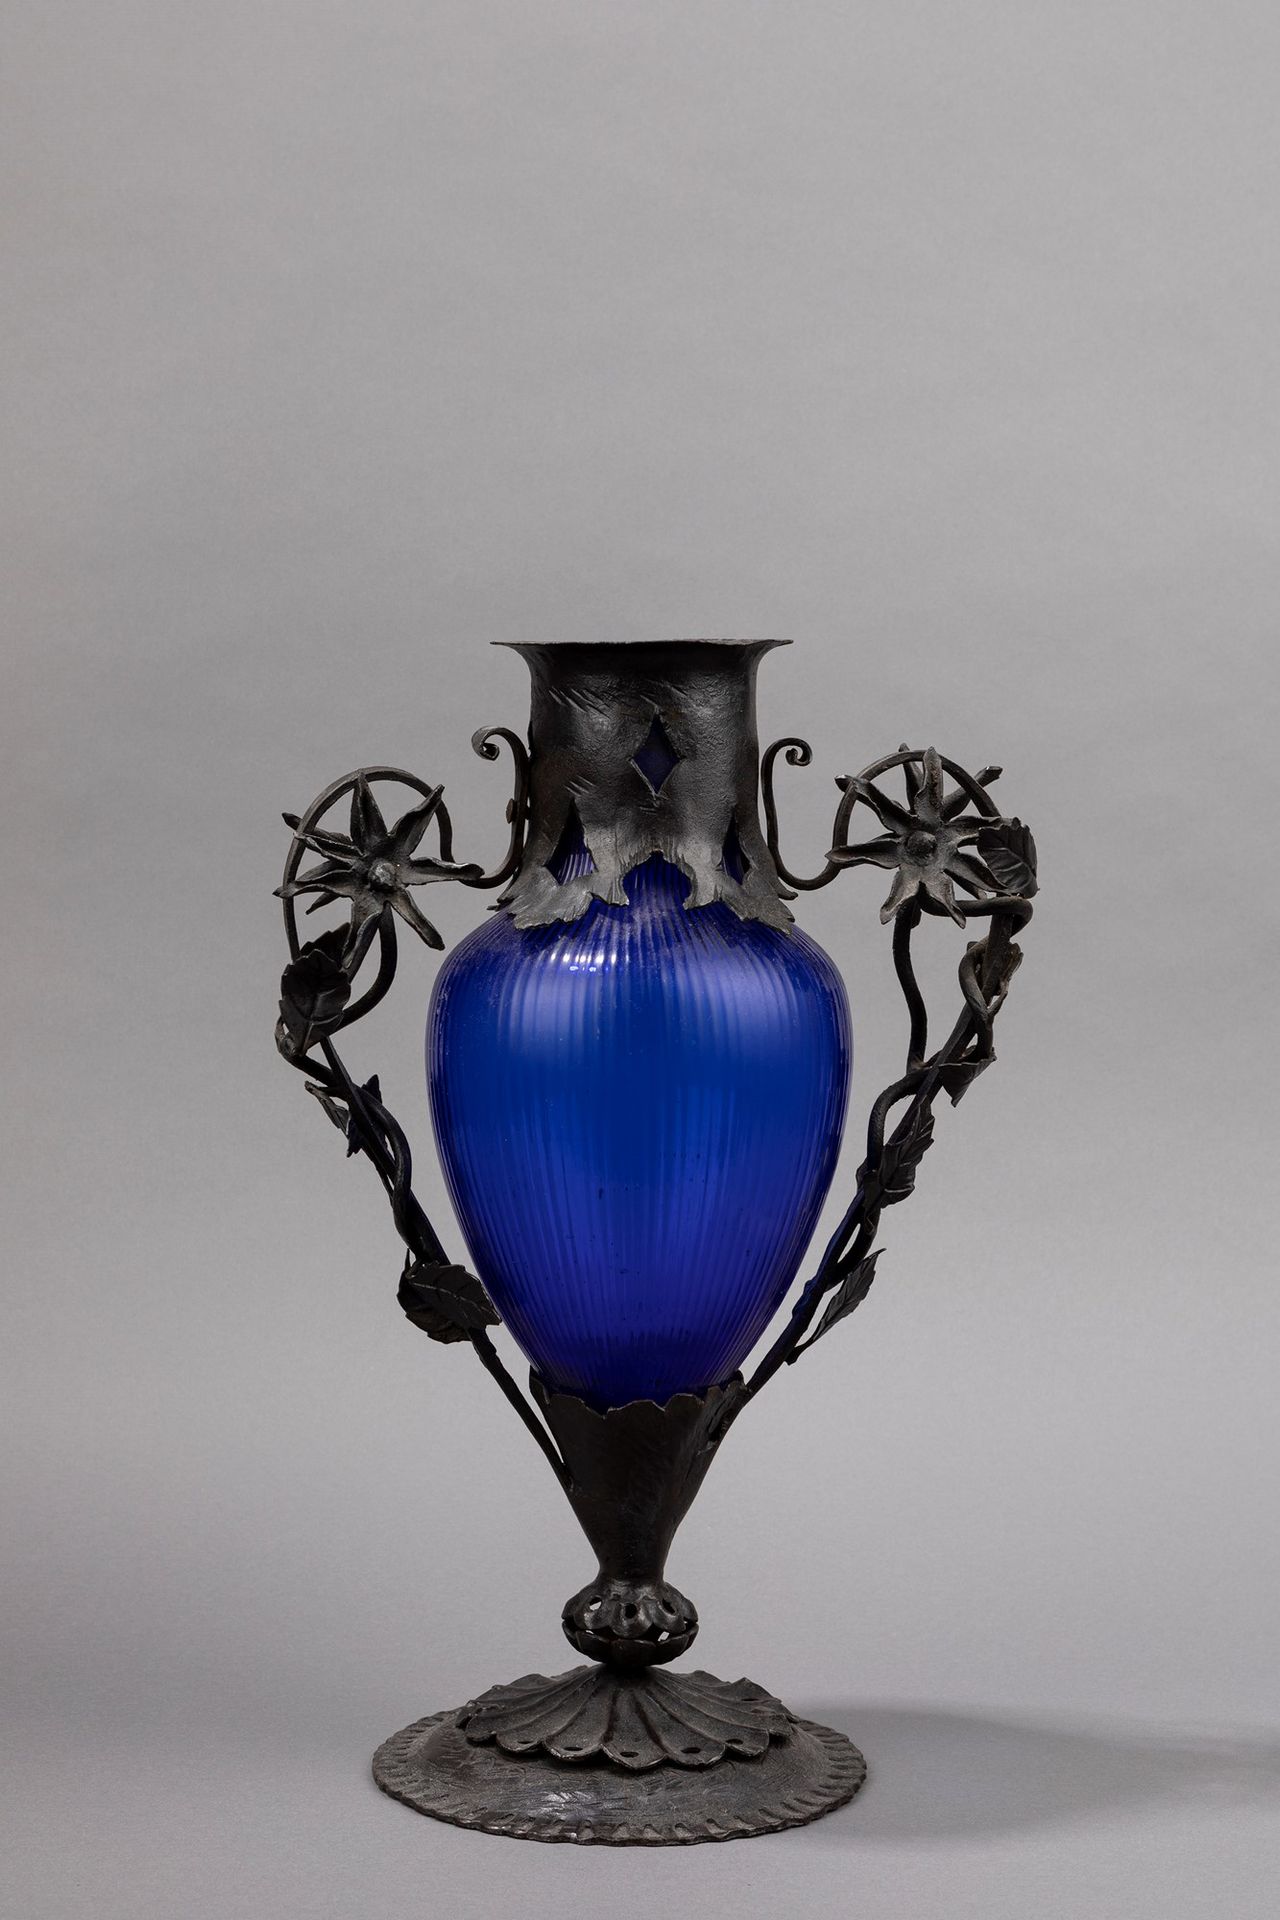 UMBERTO BELLOTTO 花瓶，1930年约

h 37 x 24 x 14 cm
穆拉诺吹塑玻璃和锻铁底座。

内部芯片